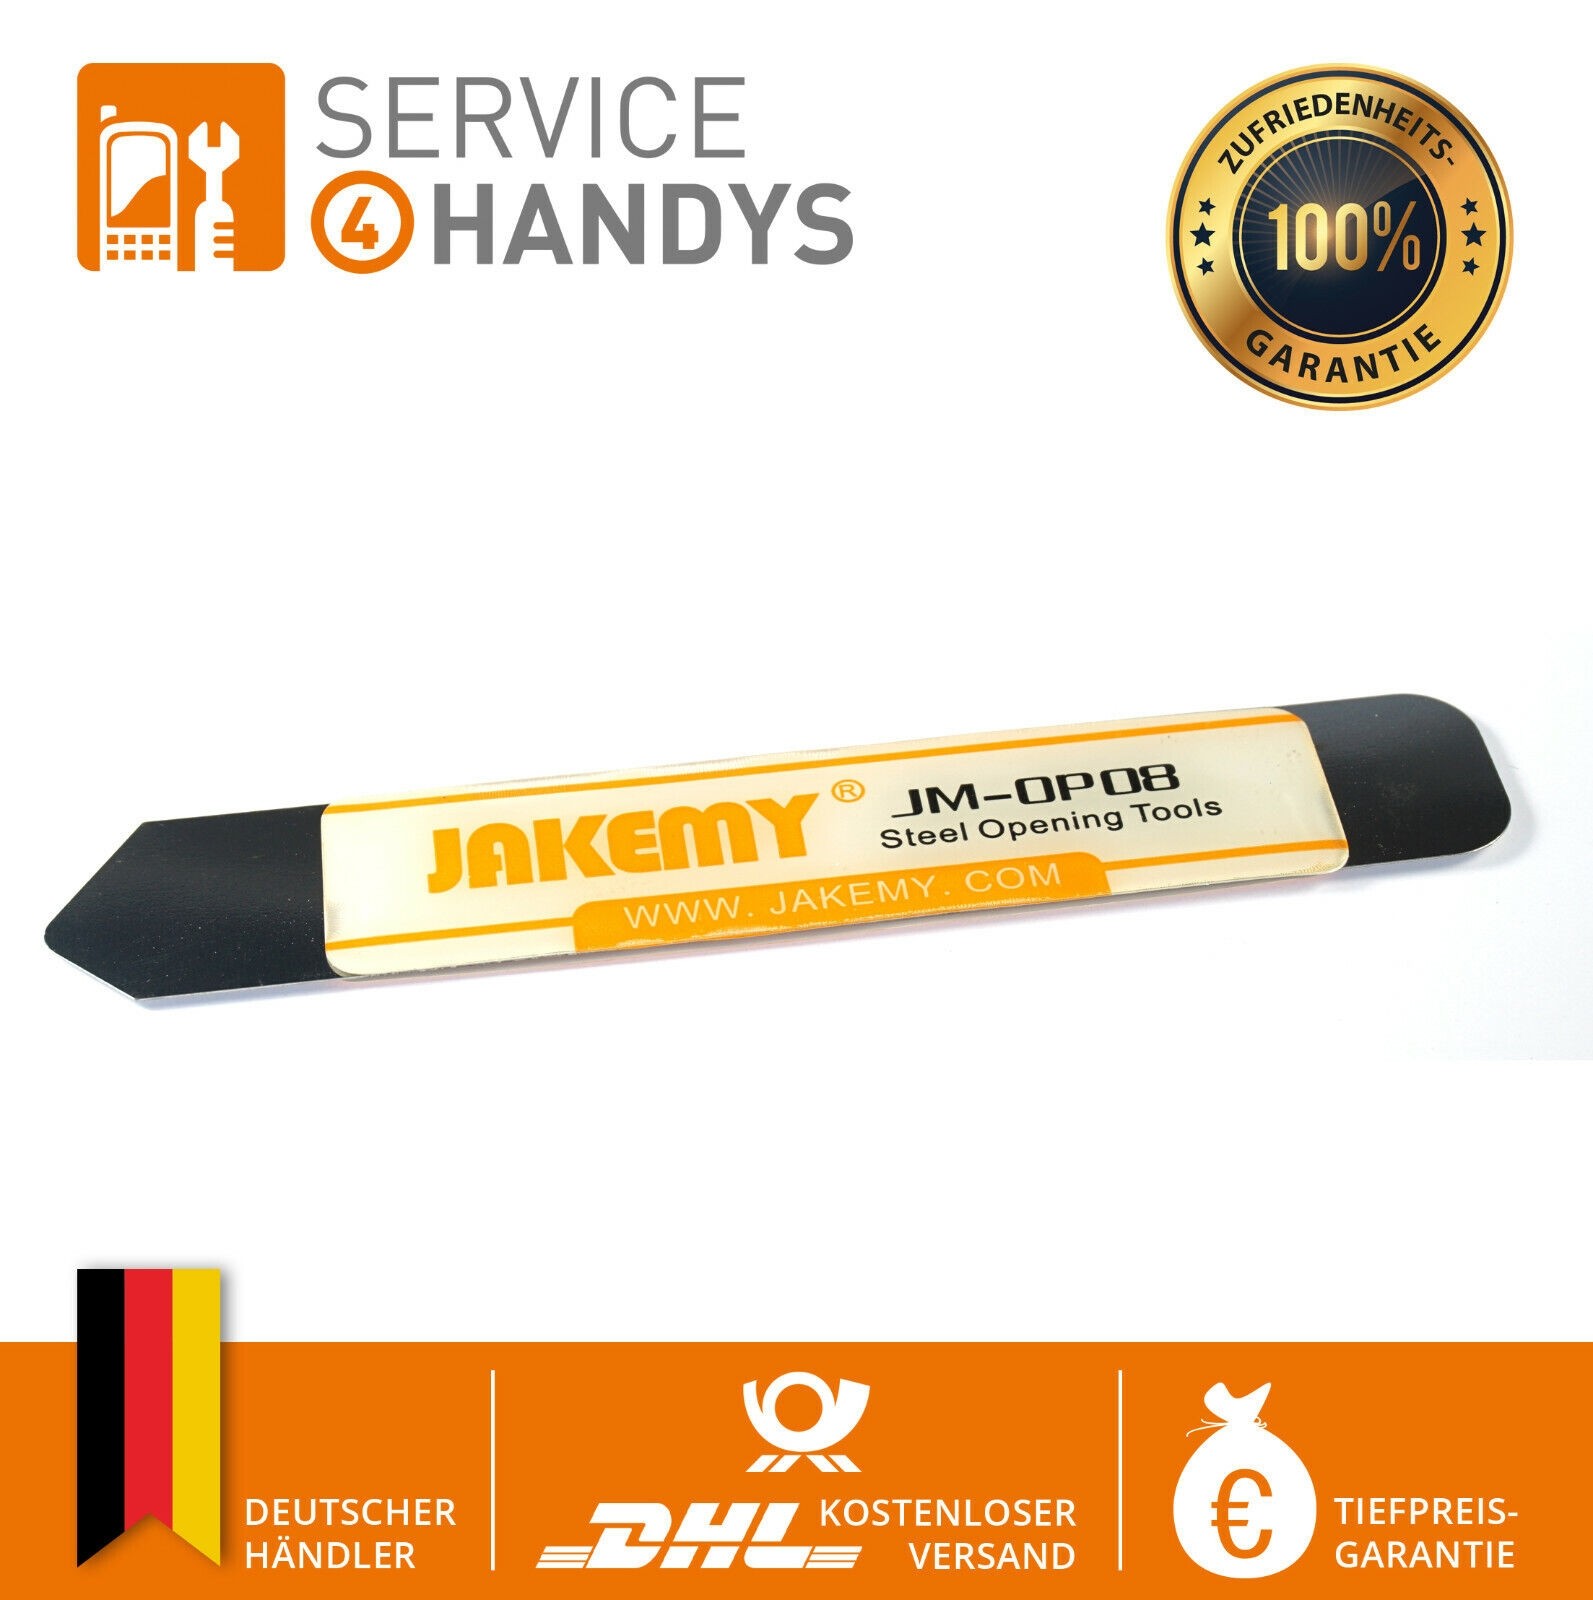 Jakemy Handy Öffner Öffnungswerkzeug Display Metall Spudger Pry Tool Hebel  - Preis - Service4Handys